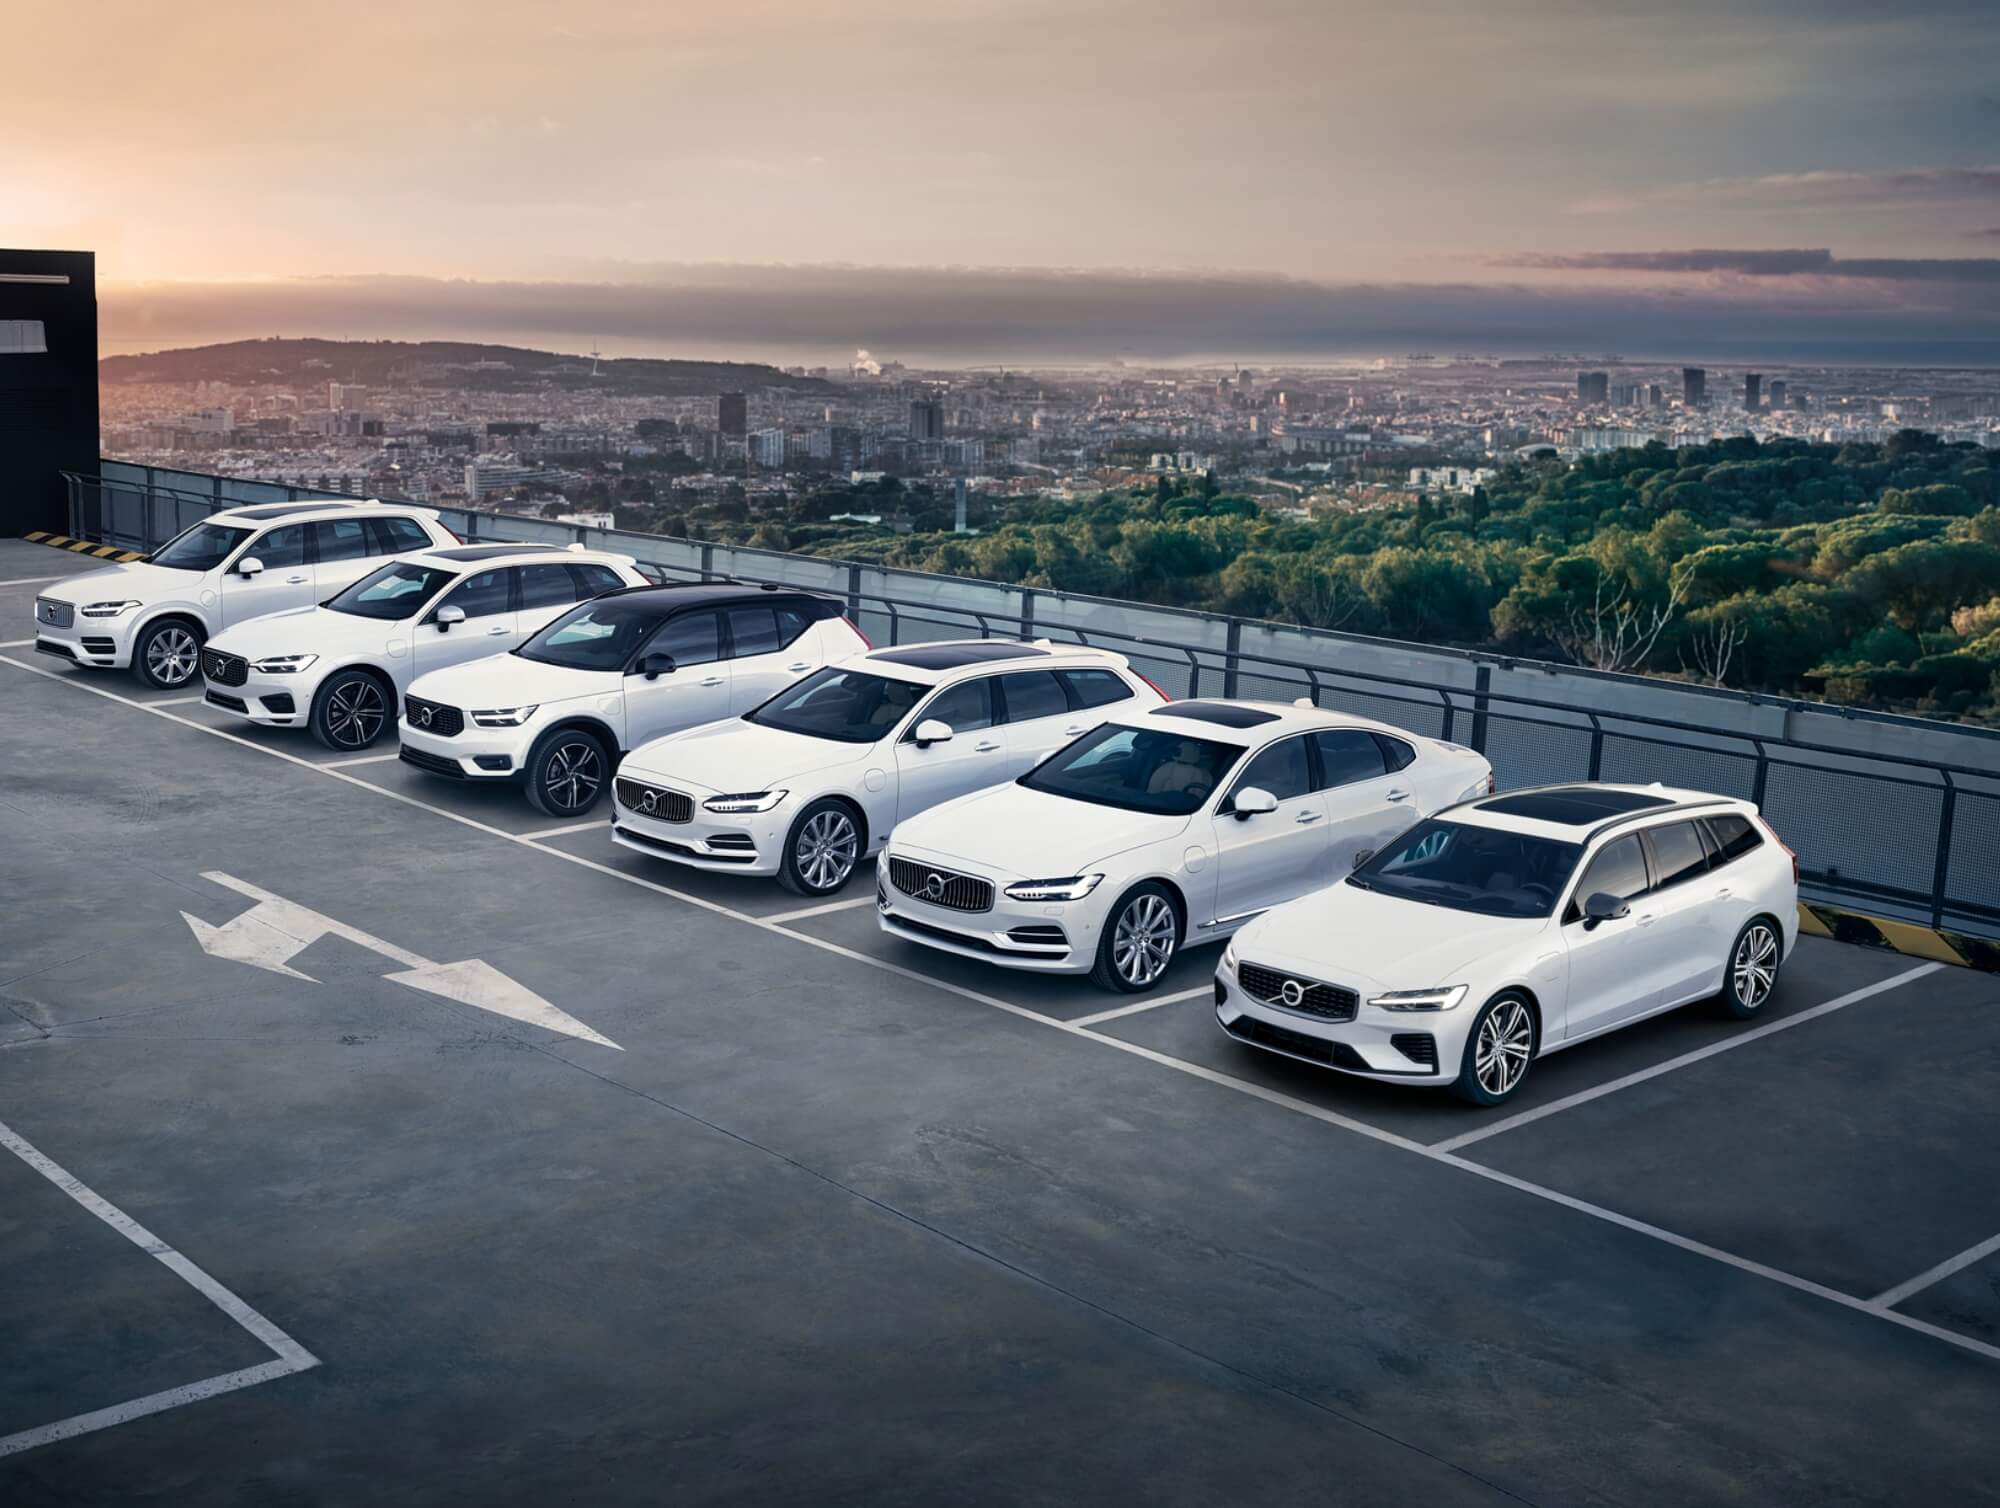 Mehrere weiße Volvo Fahrzeuge stehen nebeneinander auf dem Parkplatz.